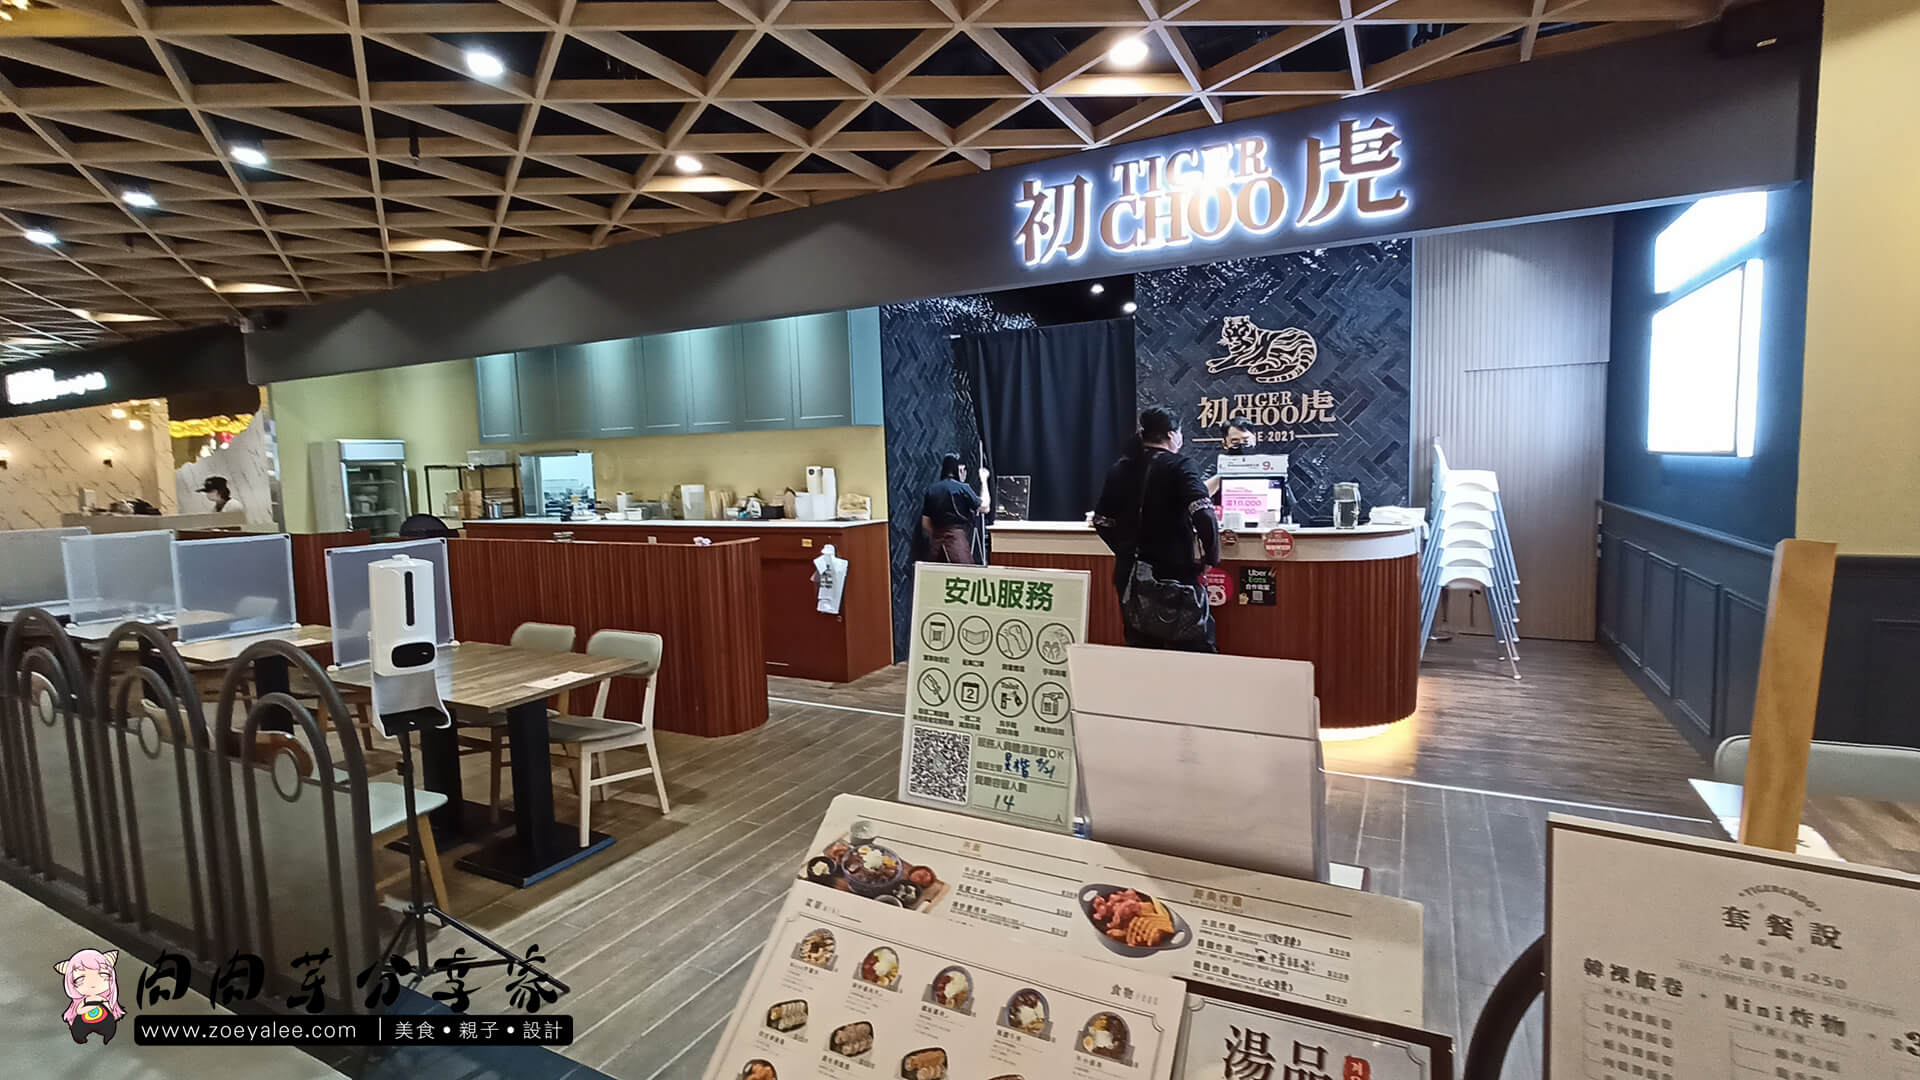 桃園蘆竹青埔A19美食環球購物中心內--星悅新加波料理&初虎韓式小食堂